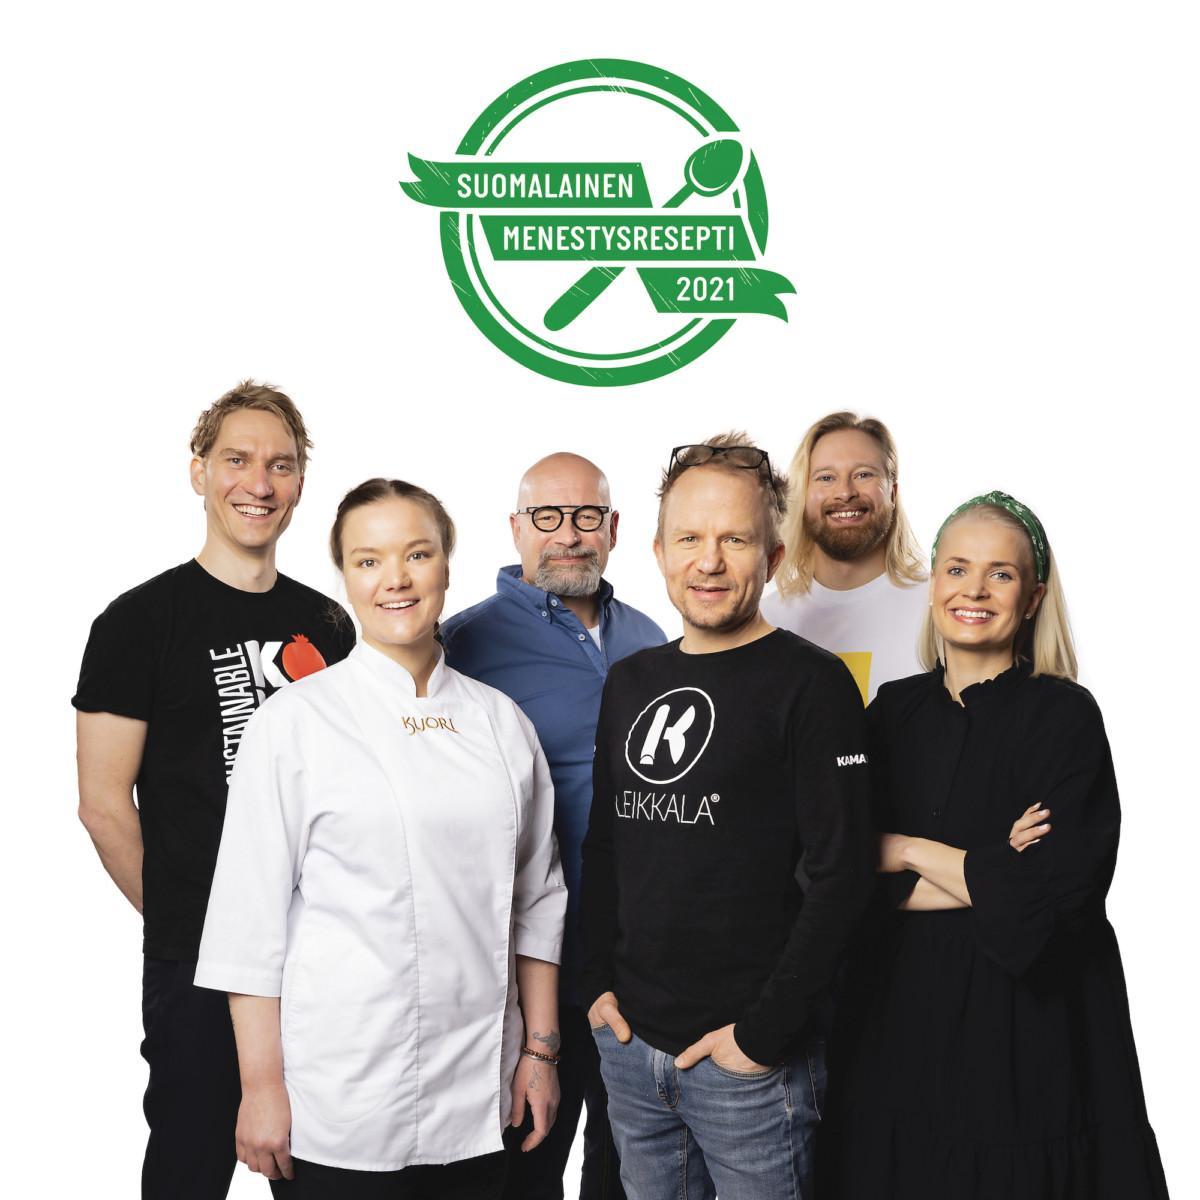 Suomalainen Menestysresepti 2021 - Foodin